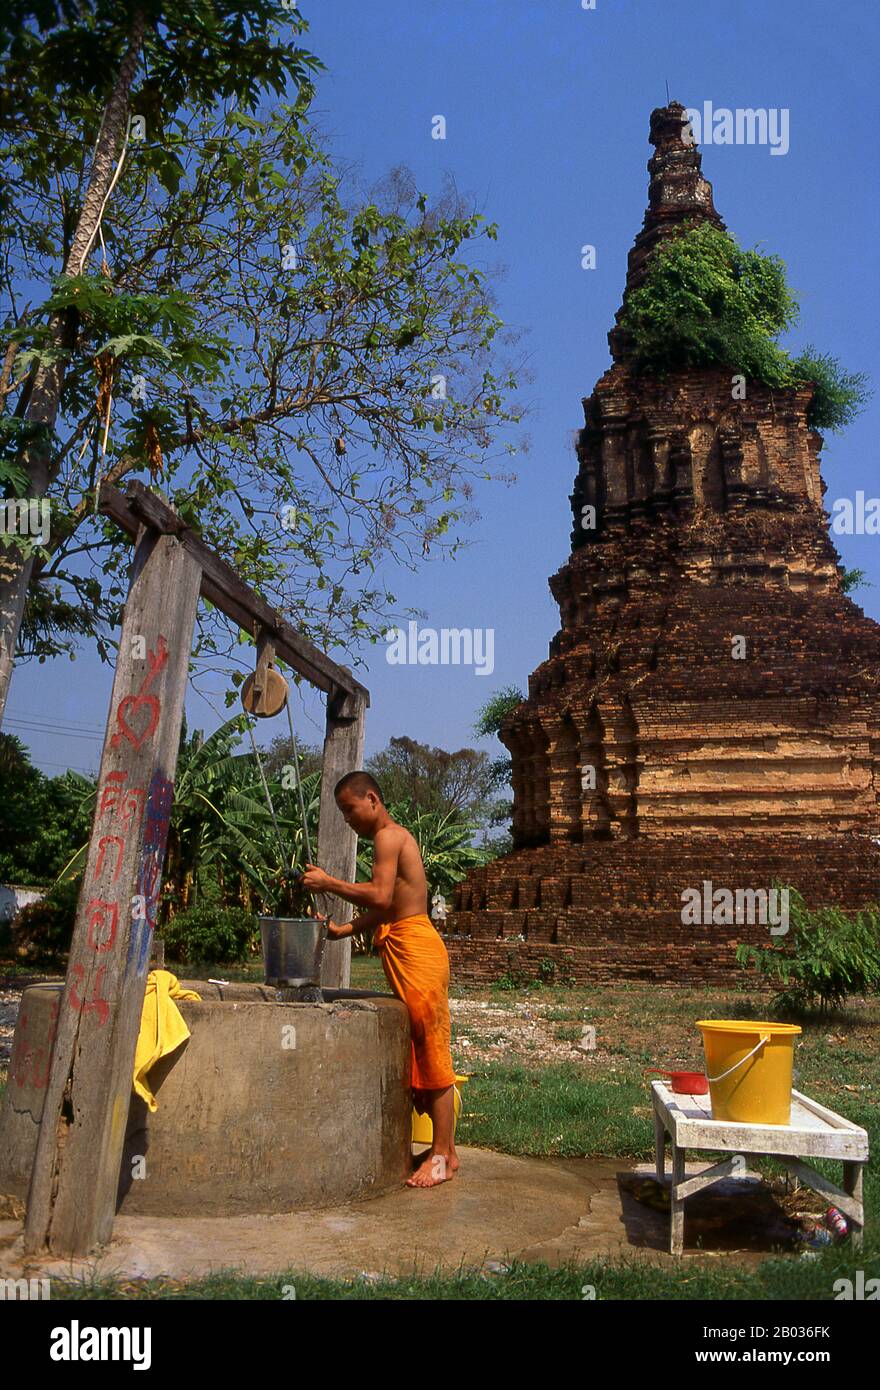 Phrae fue construido al lado del río Yom en el siglo 12 y fue parte del reino Mon de Haripunchai. En 1443, el rey Tilokaraj del vecino reino Lanna capturó la ciudad. Foto de stock